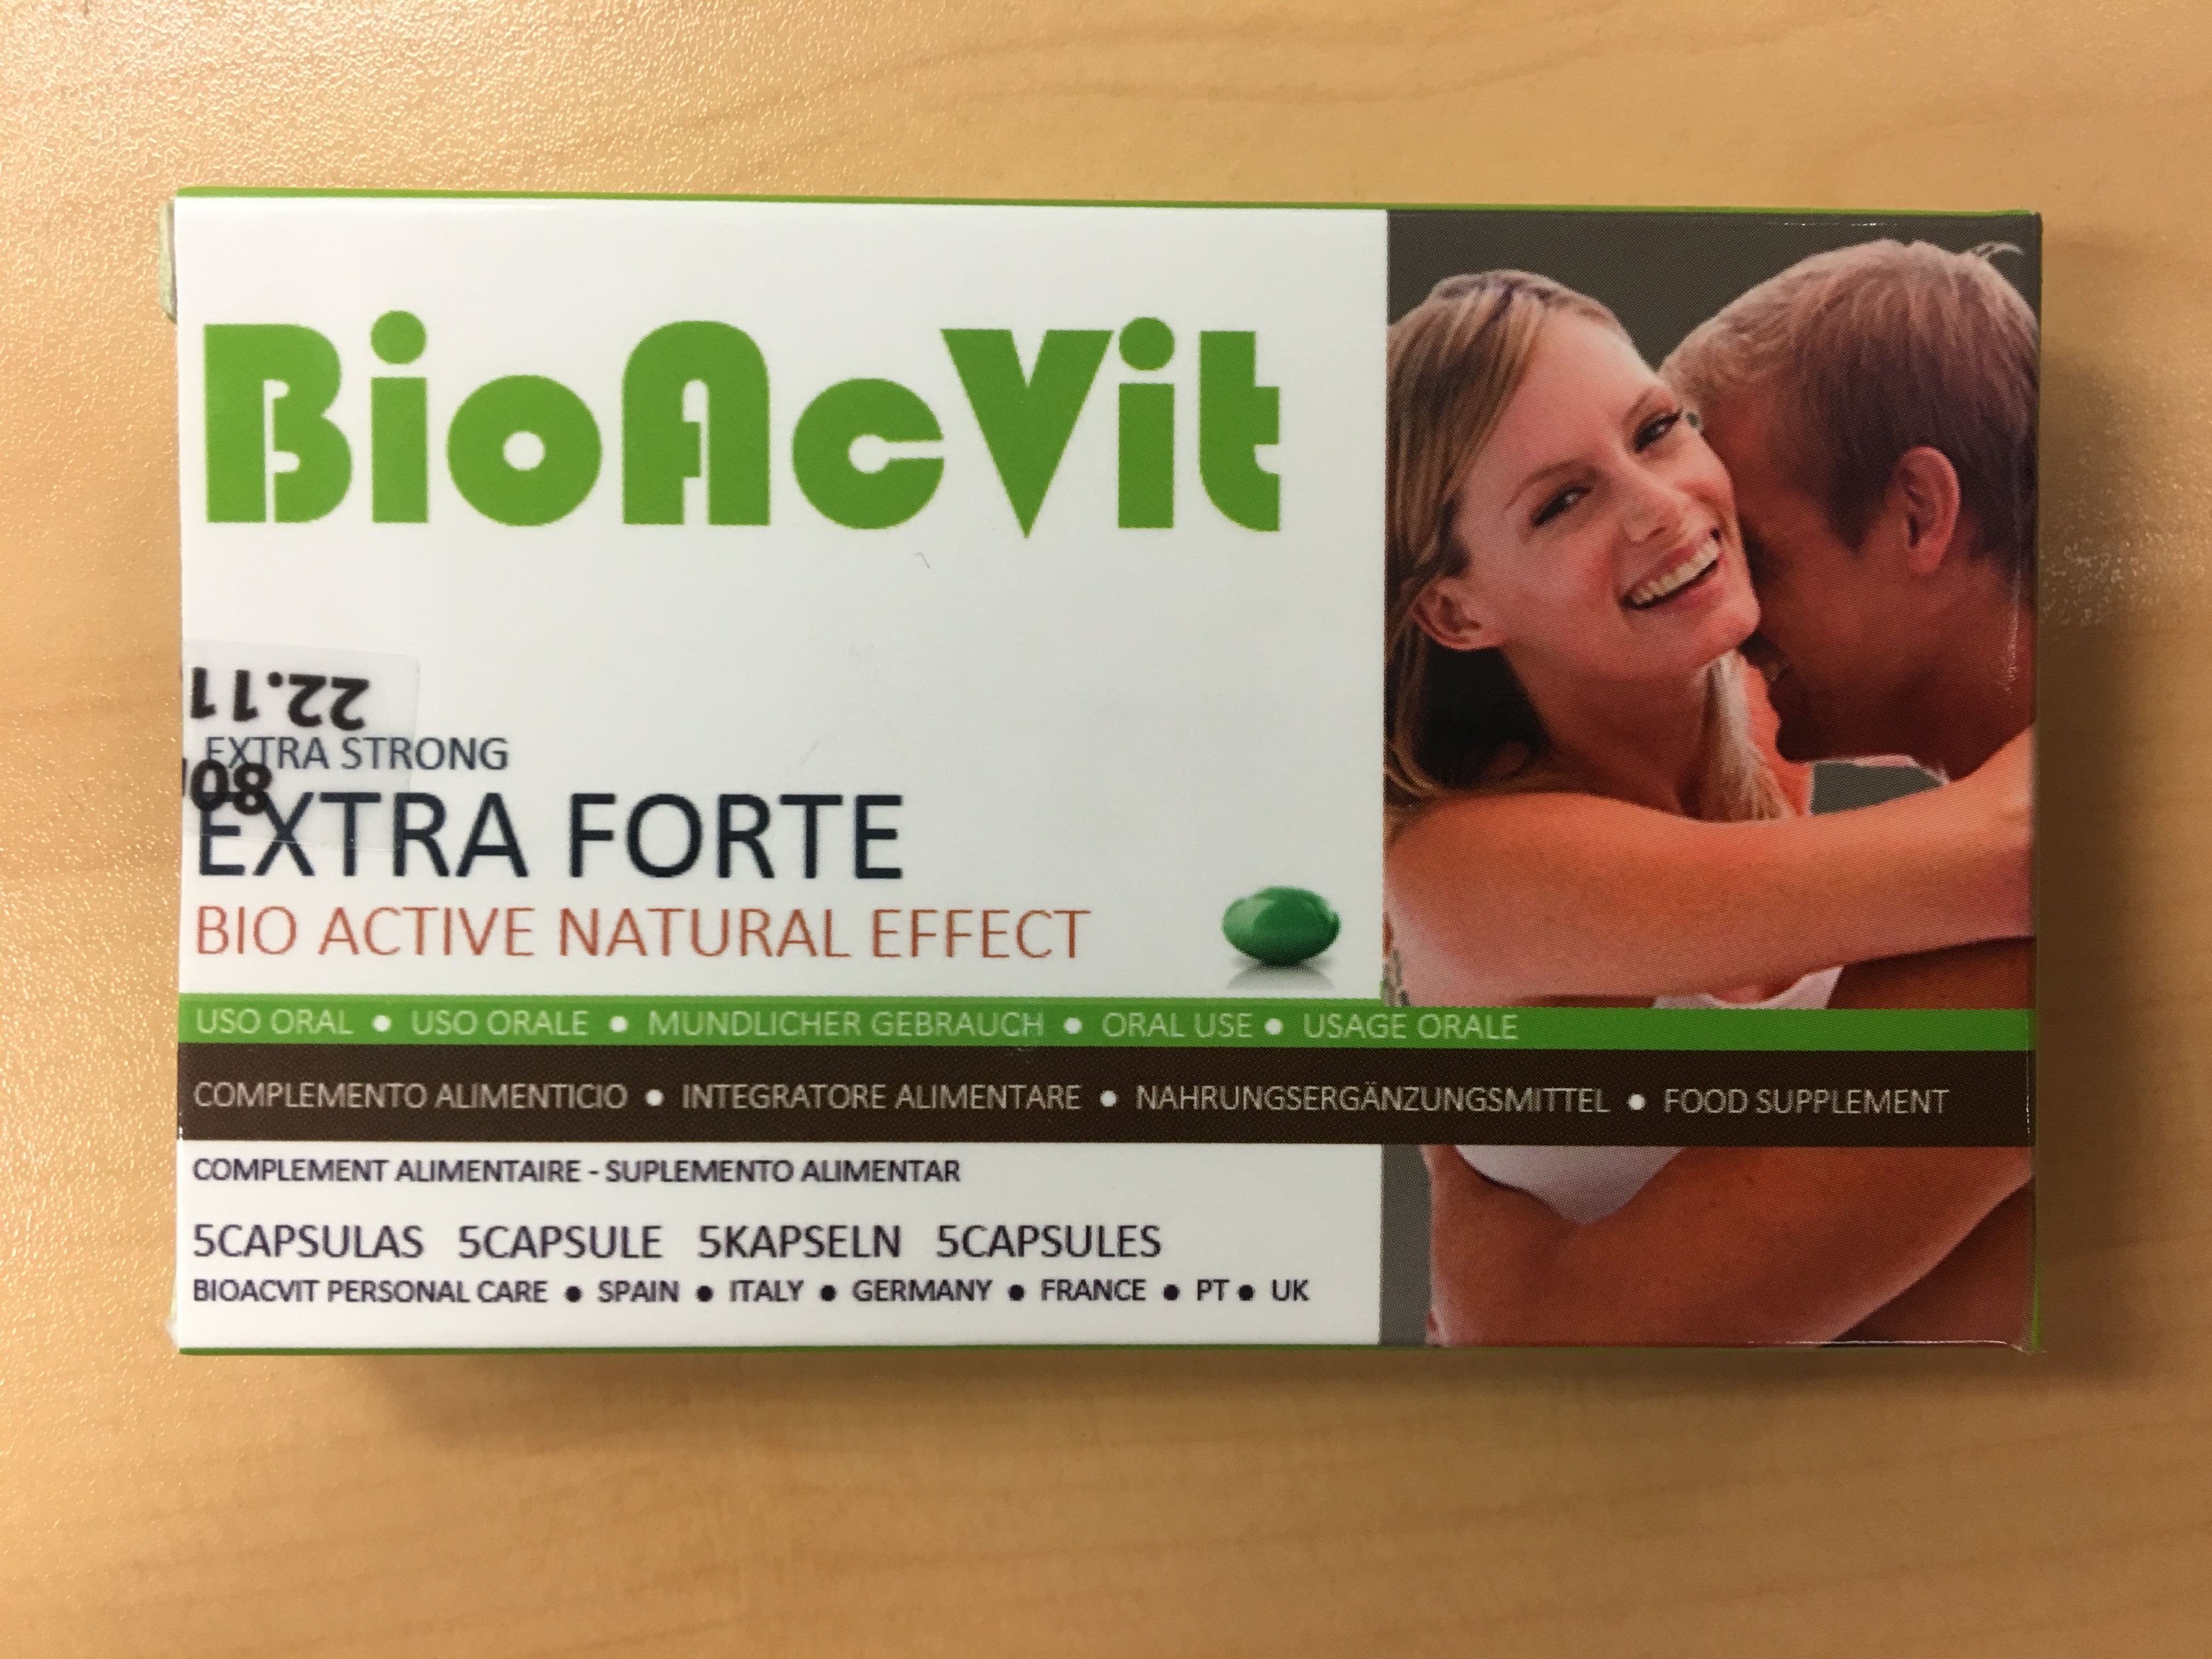 Billede af det ulovlige produkt: BioAcVit Extra Forte